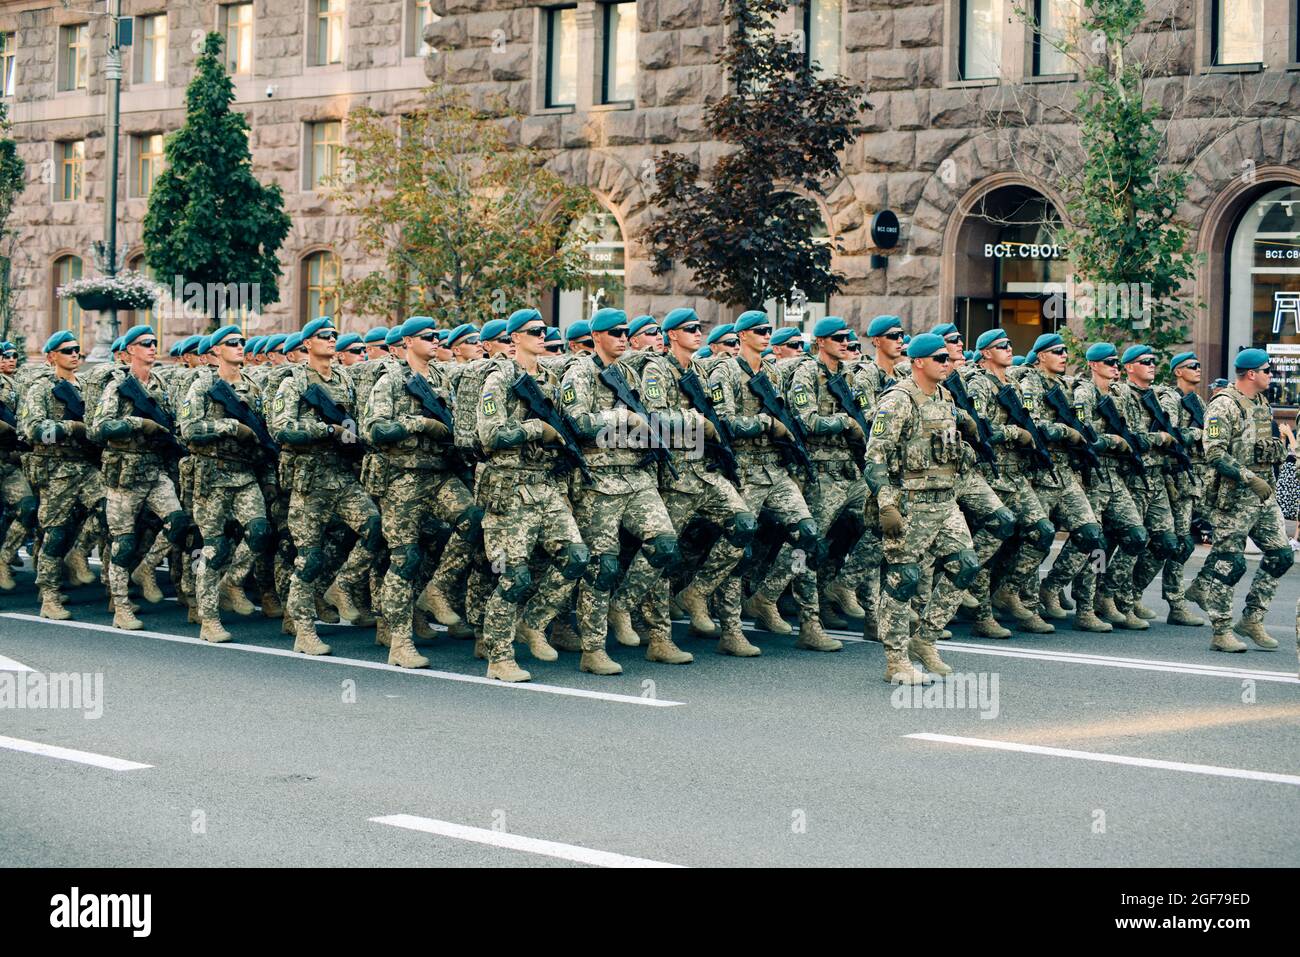 Kiev, Ucrania - 20 de agosto de 2021: Ensayo de desfile militar con ocasión de 30 años de la Independencia de Ucrania. Tropas marchando a lo largo de Khreshchatykk Foto de stock